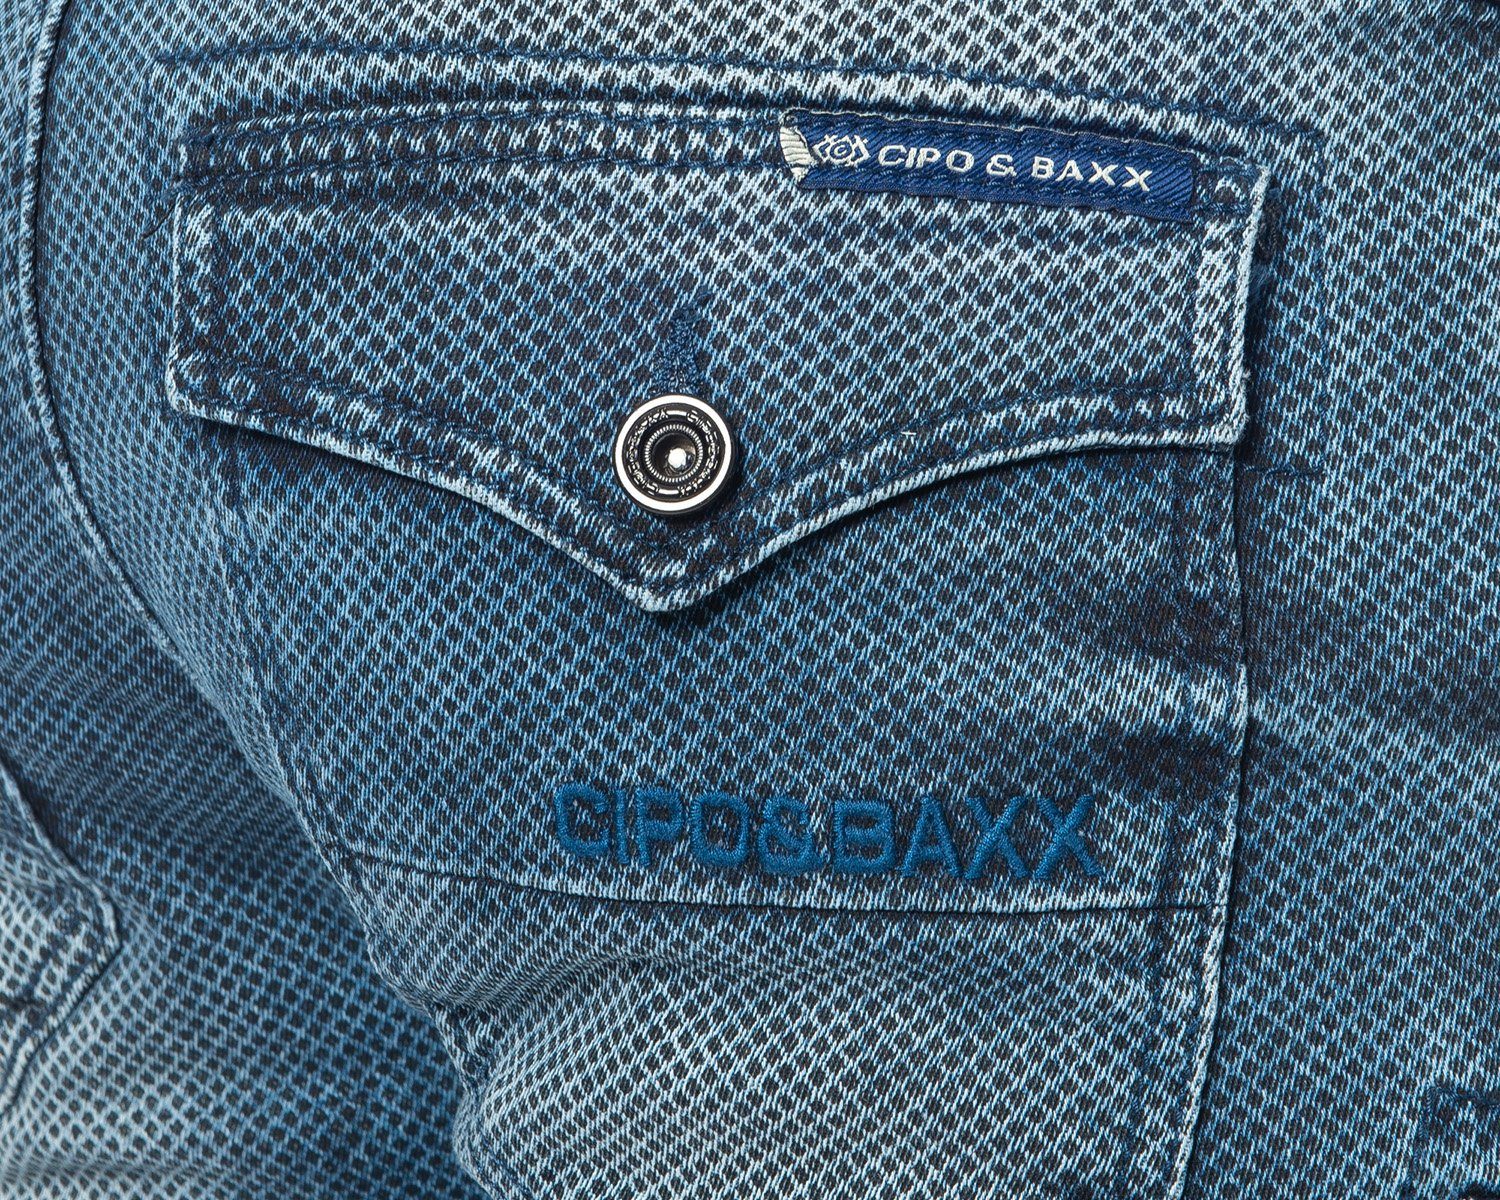 Cipo & Baxx Cargojeans Herren im Design Ausgefallenes weicher Cargo Cargo und stylischen blau Stoffmuster Jeans Tragekomfort Hose